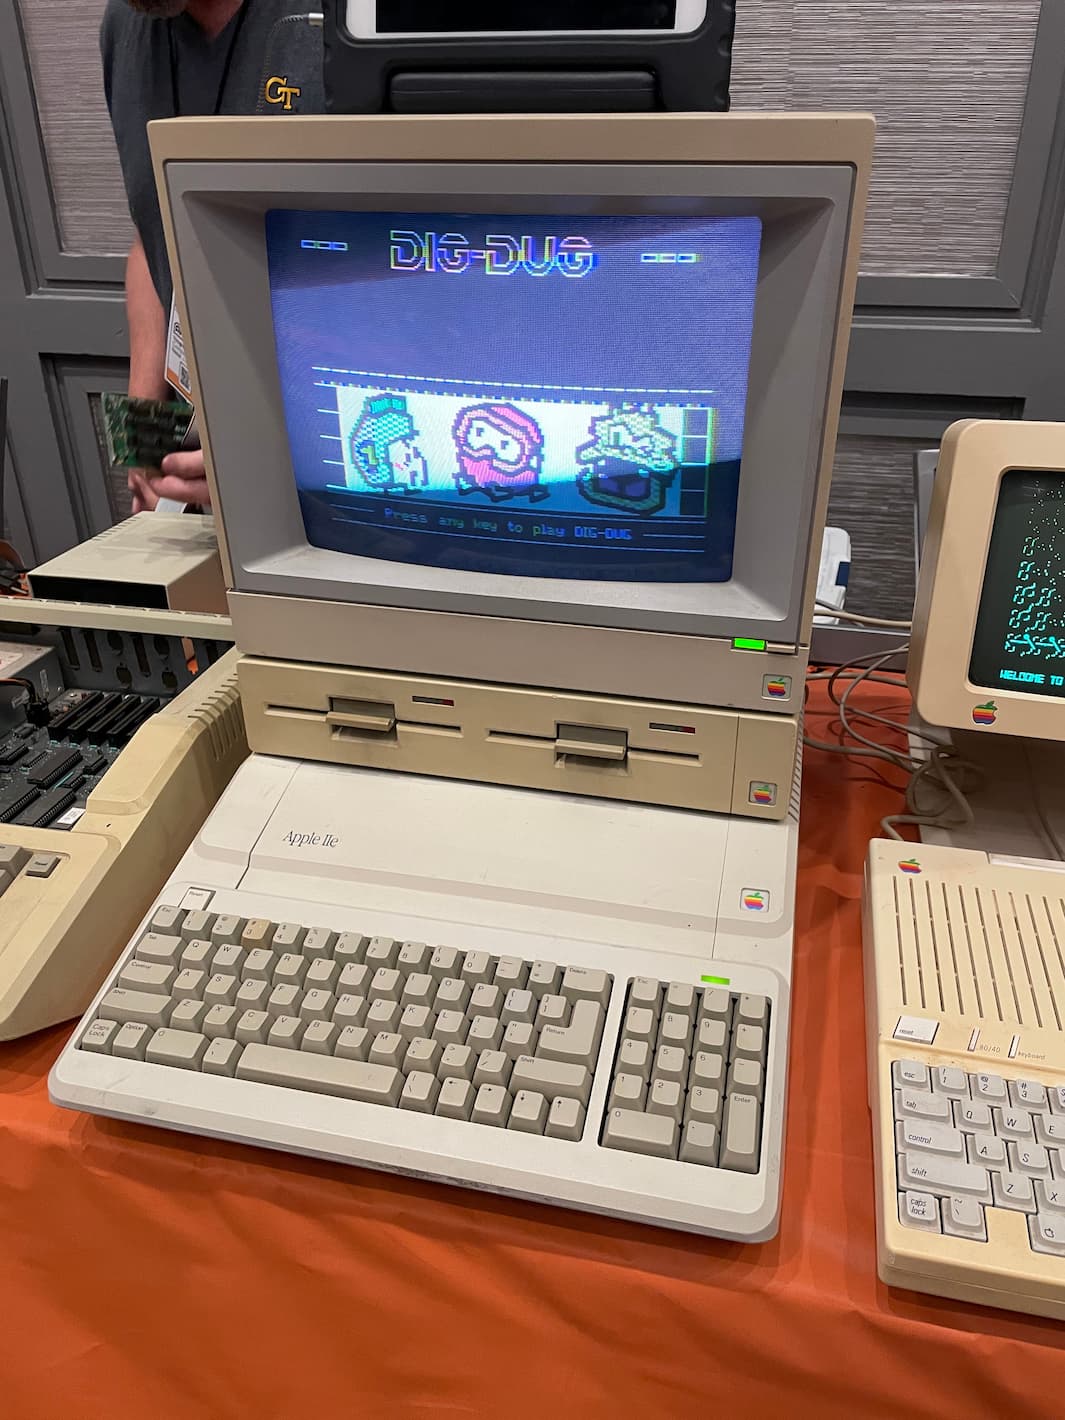 An Apple IIe.